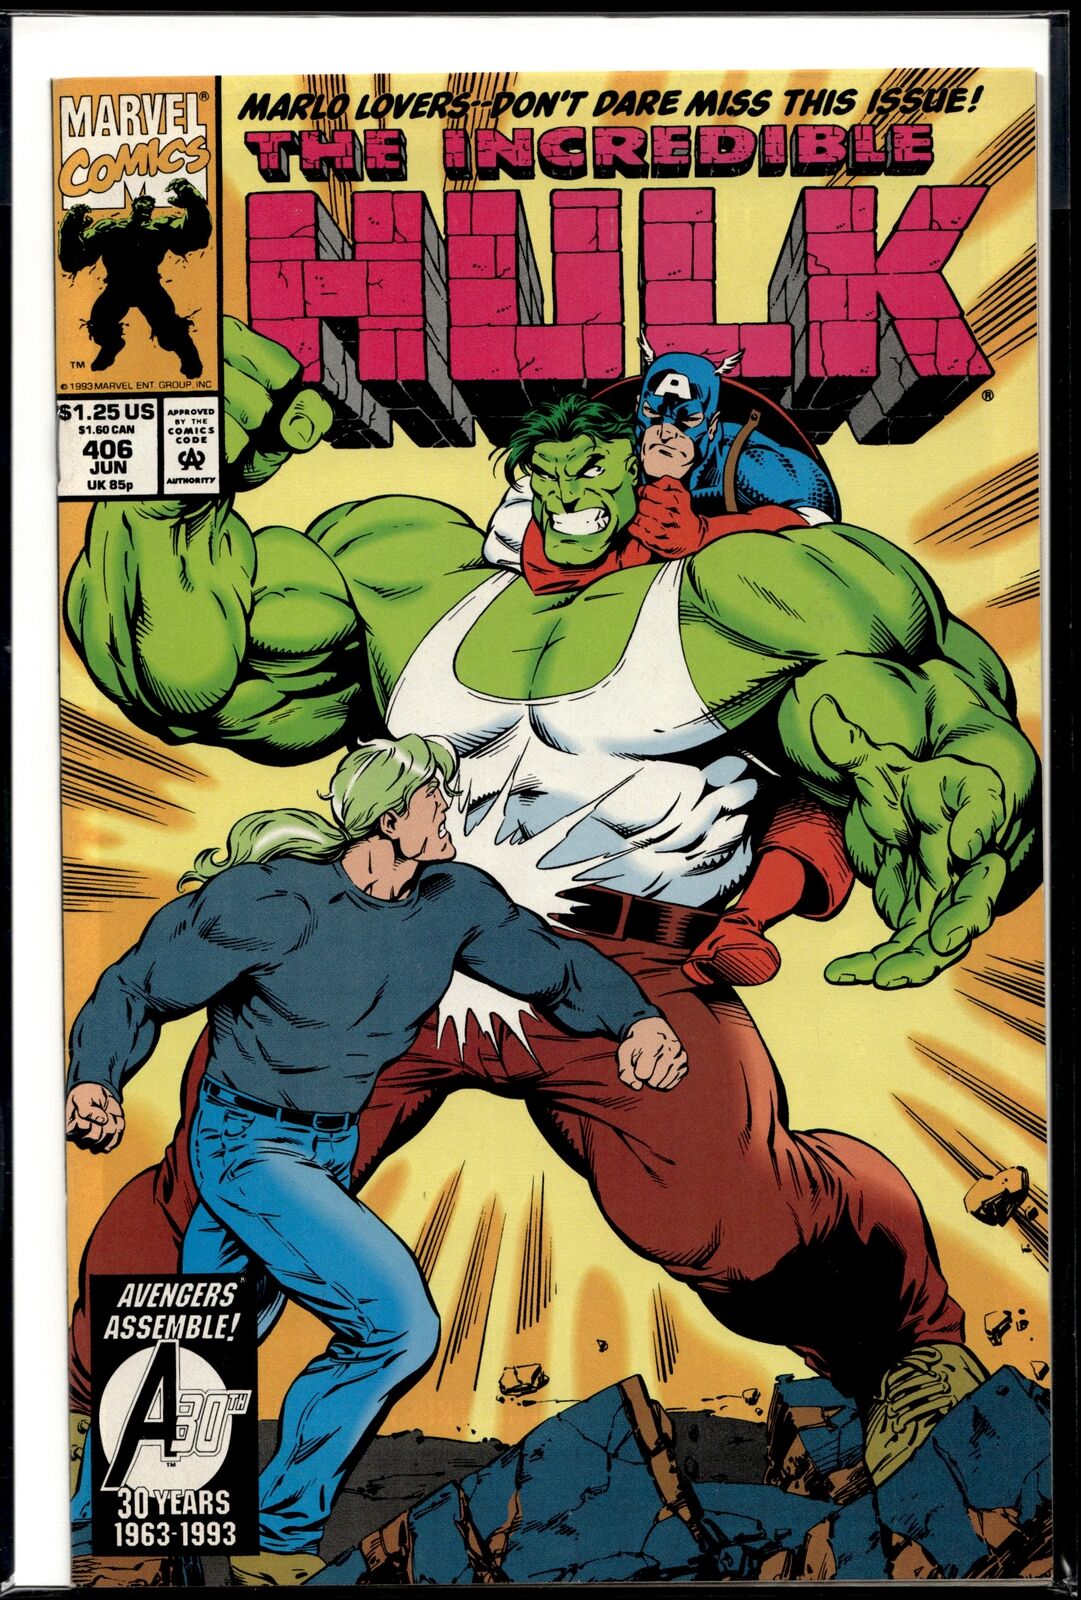 1993 Incredible Hulk #406 Marvel Comic